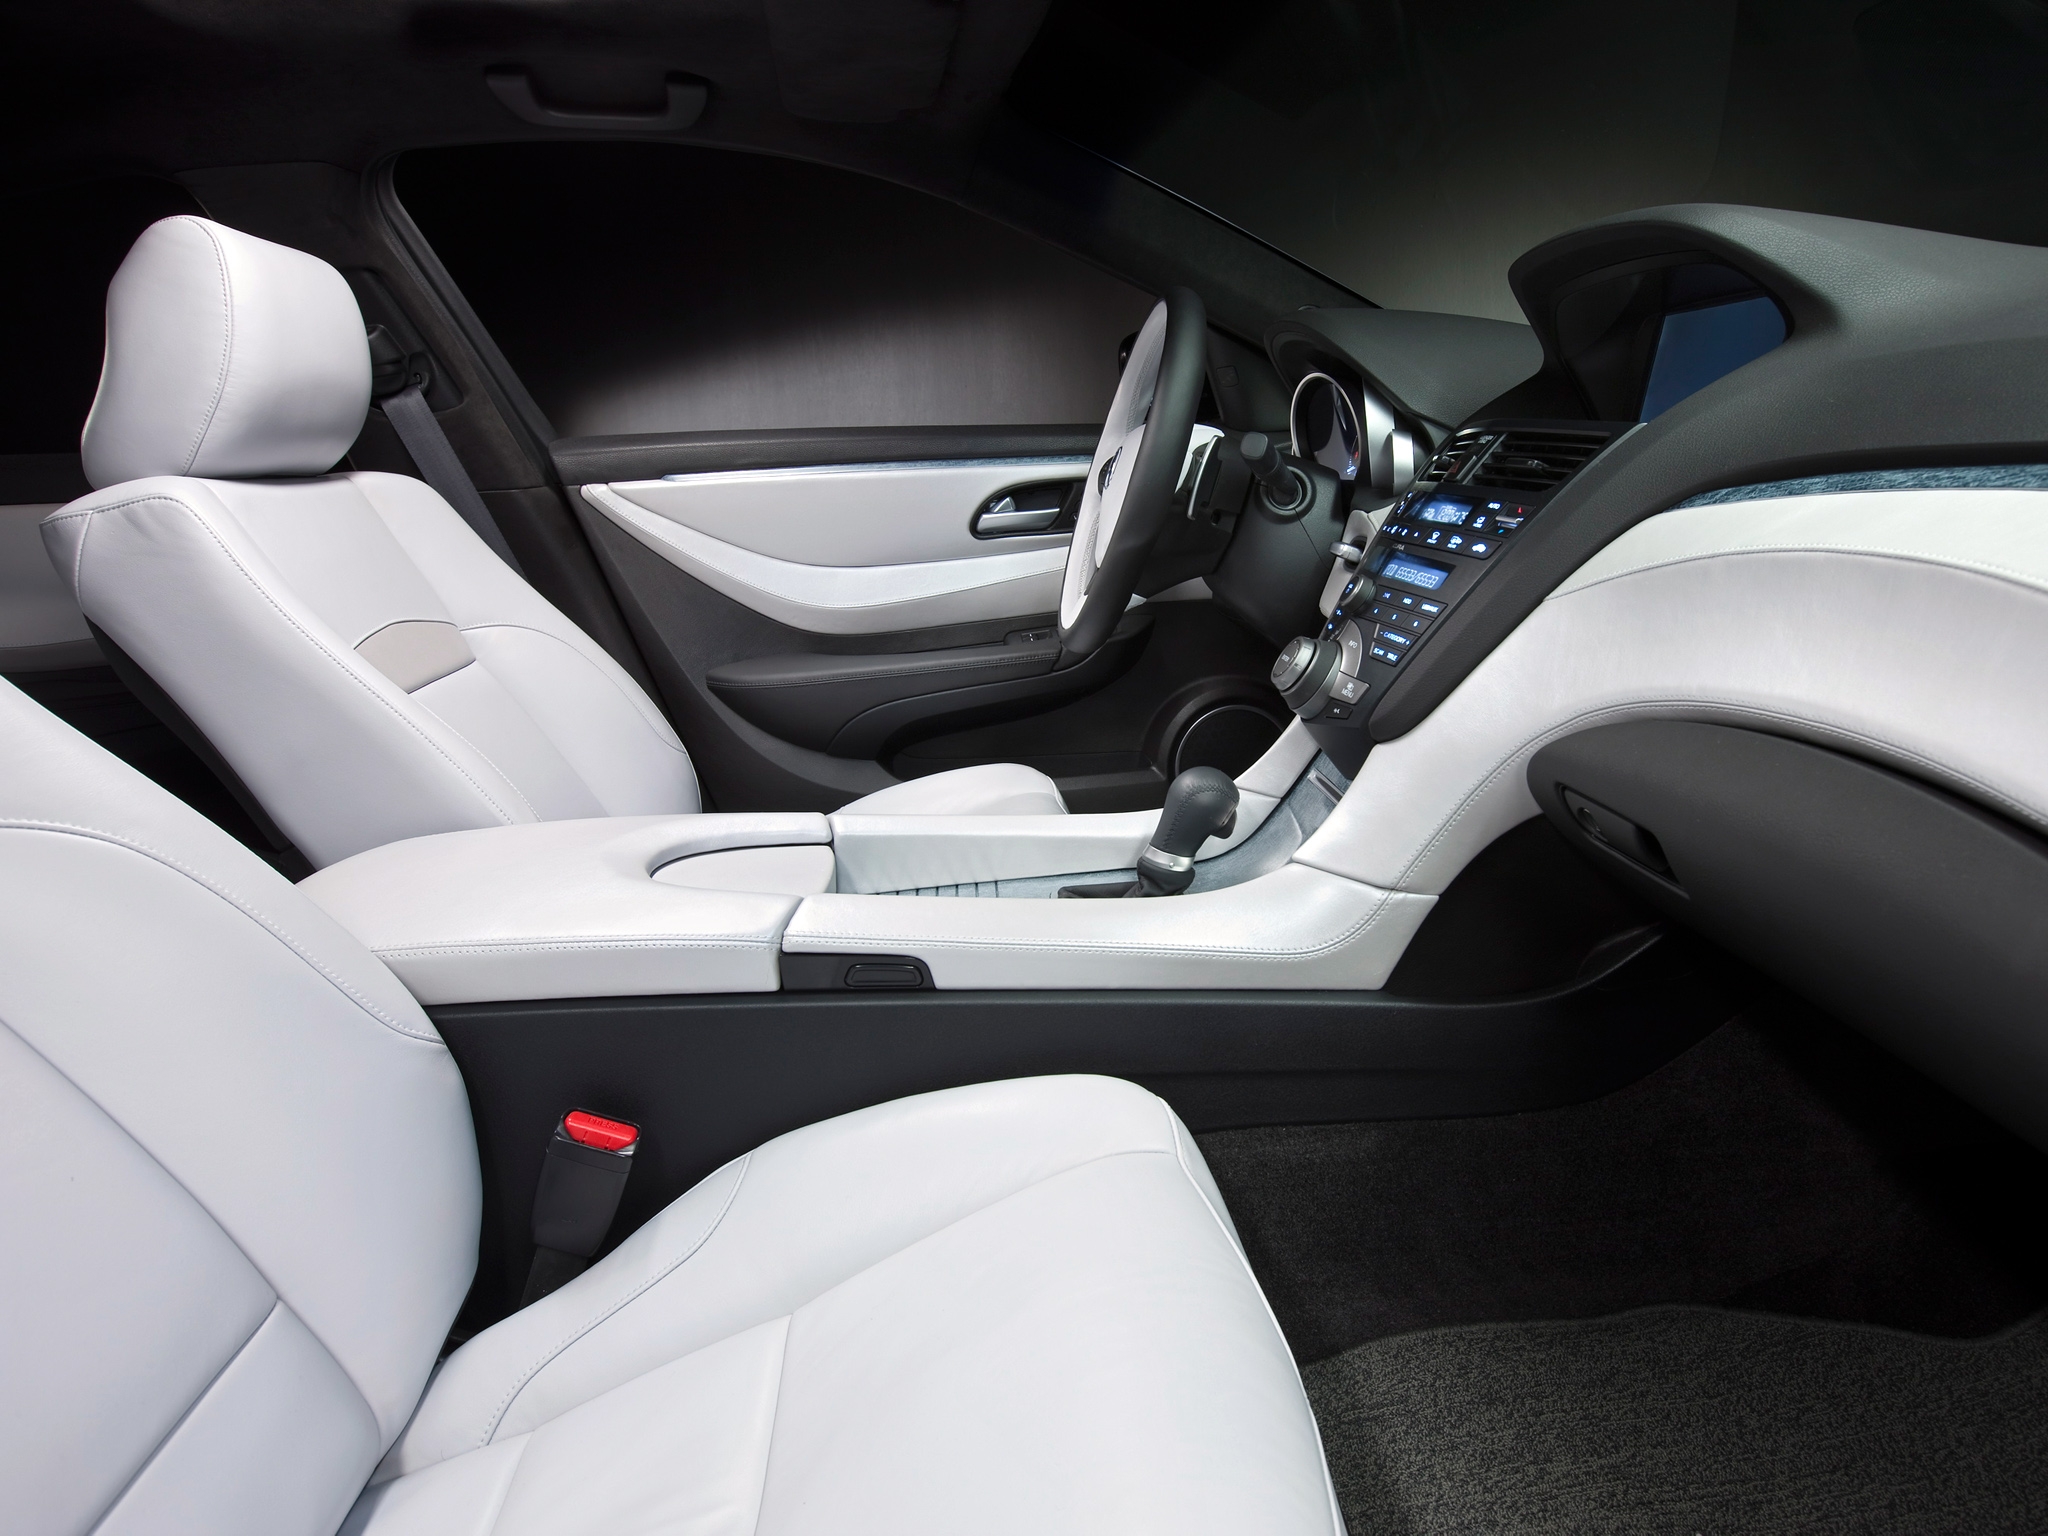 cars, salon, acura, interior, steering wheel, rudder, zdx, 2009, concept car Full HD